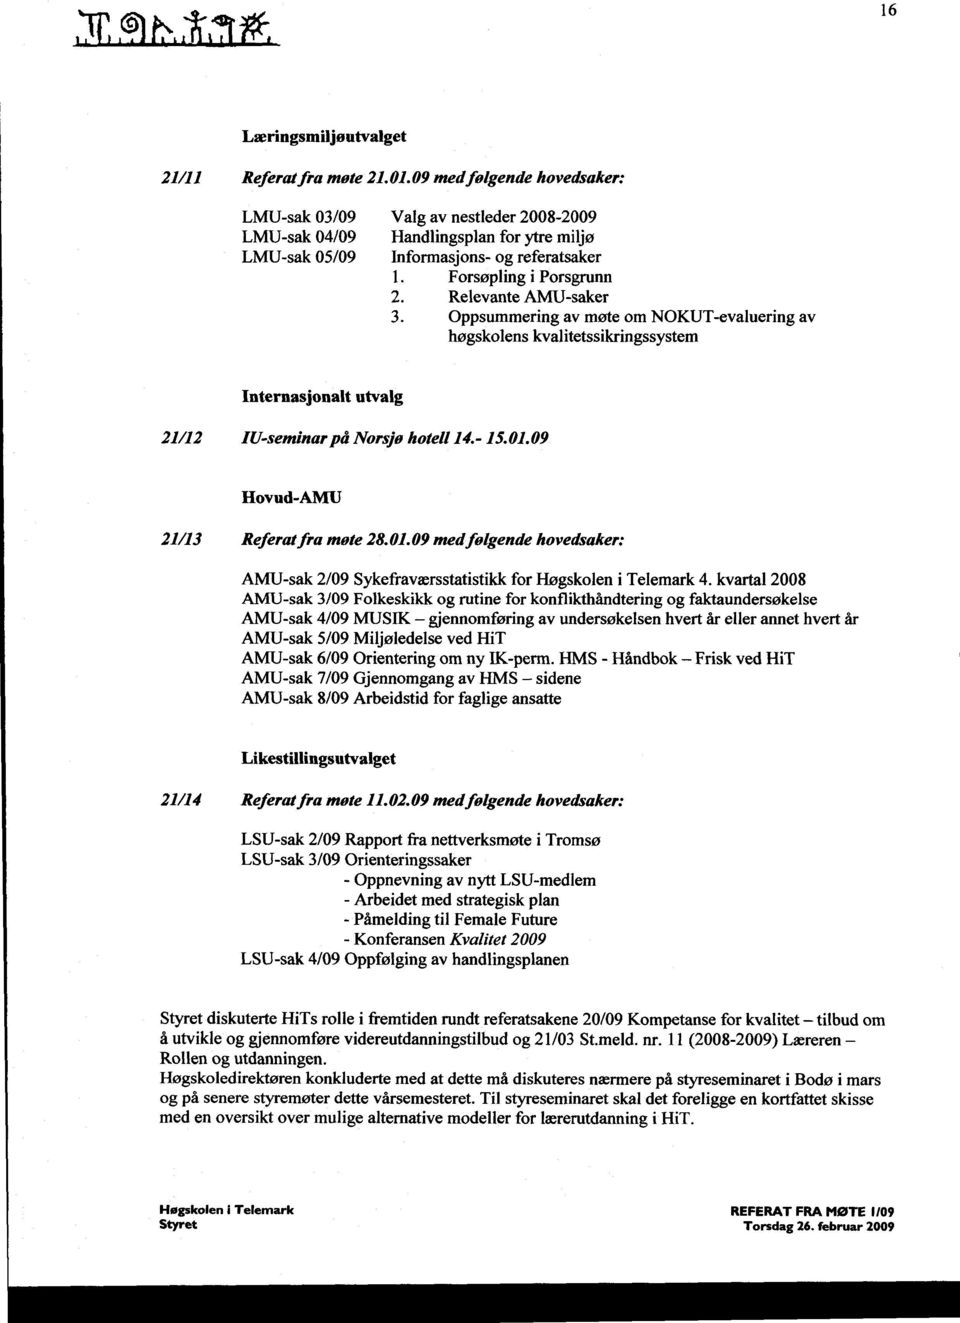 Relevante AMU-saker 3. Oppsummering av møte om NOKUT-evaluering av høgskolens kvalitetssikringssystem Internasjonalt utvalg 21/12 IU-seminarpå Norsjø hotell 14.- 15.01.